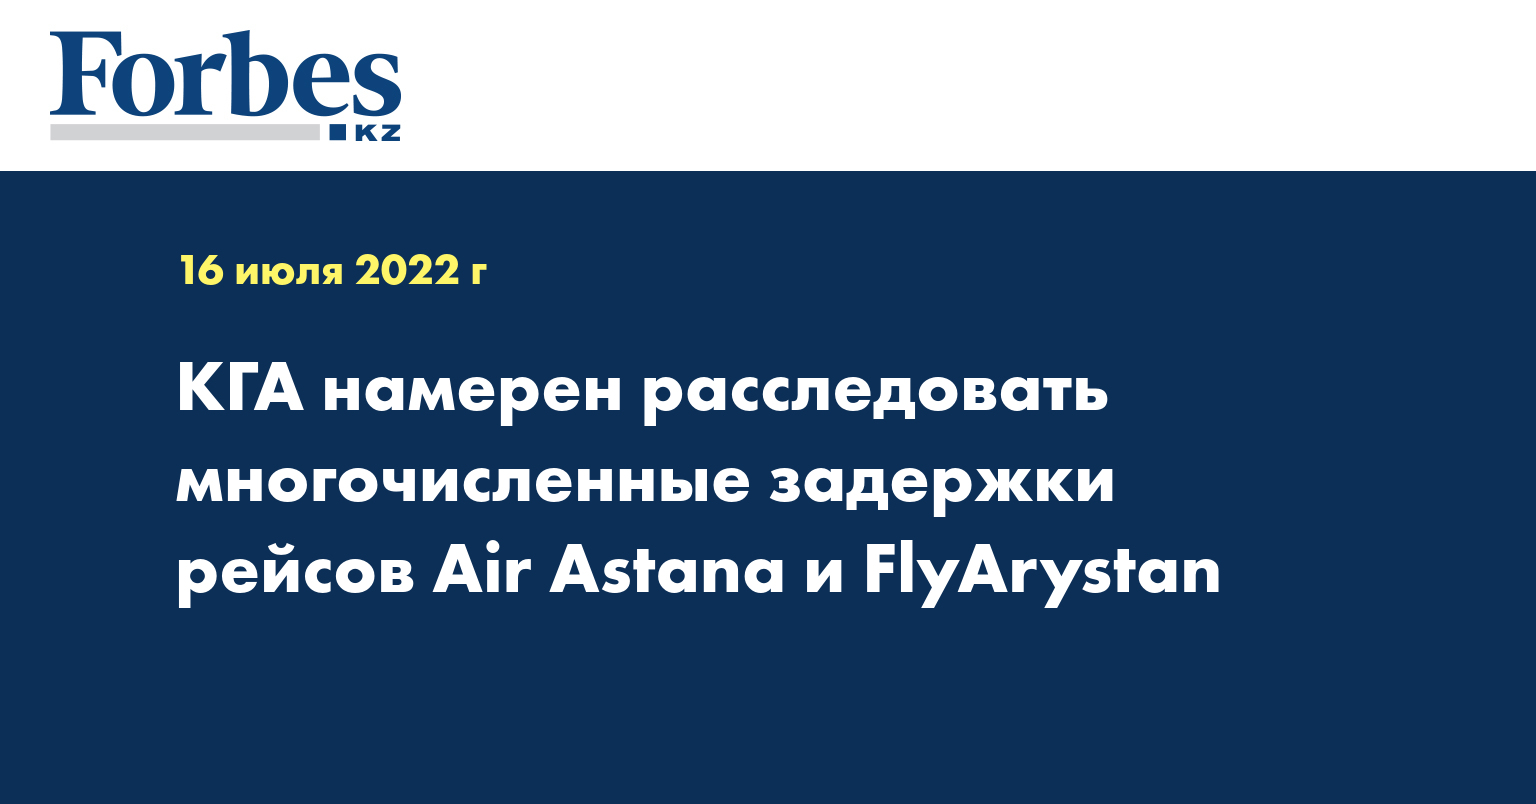 КГА намерен расследовать многочисленные задержки рейсов Air Astana и FlyArystan 